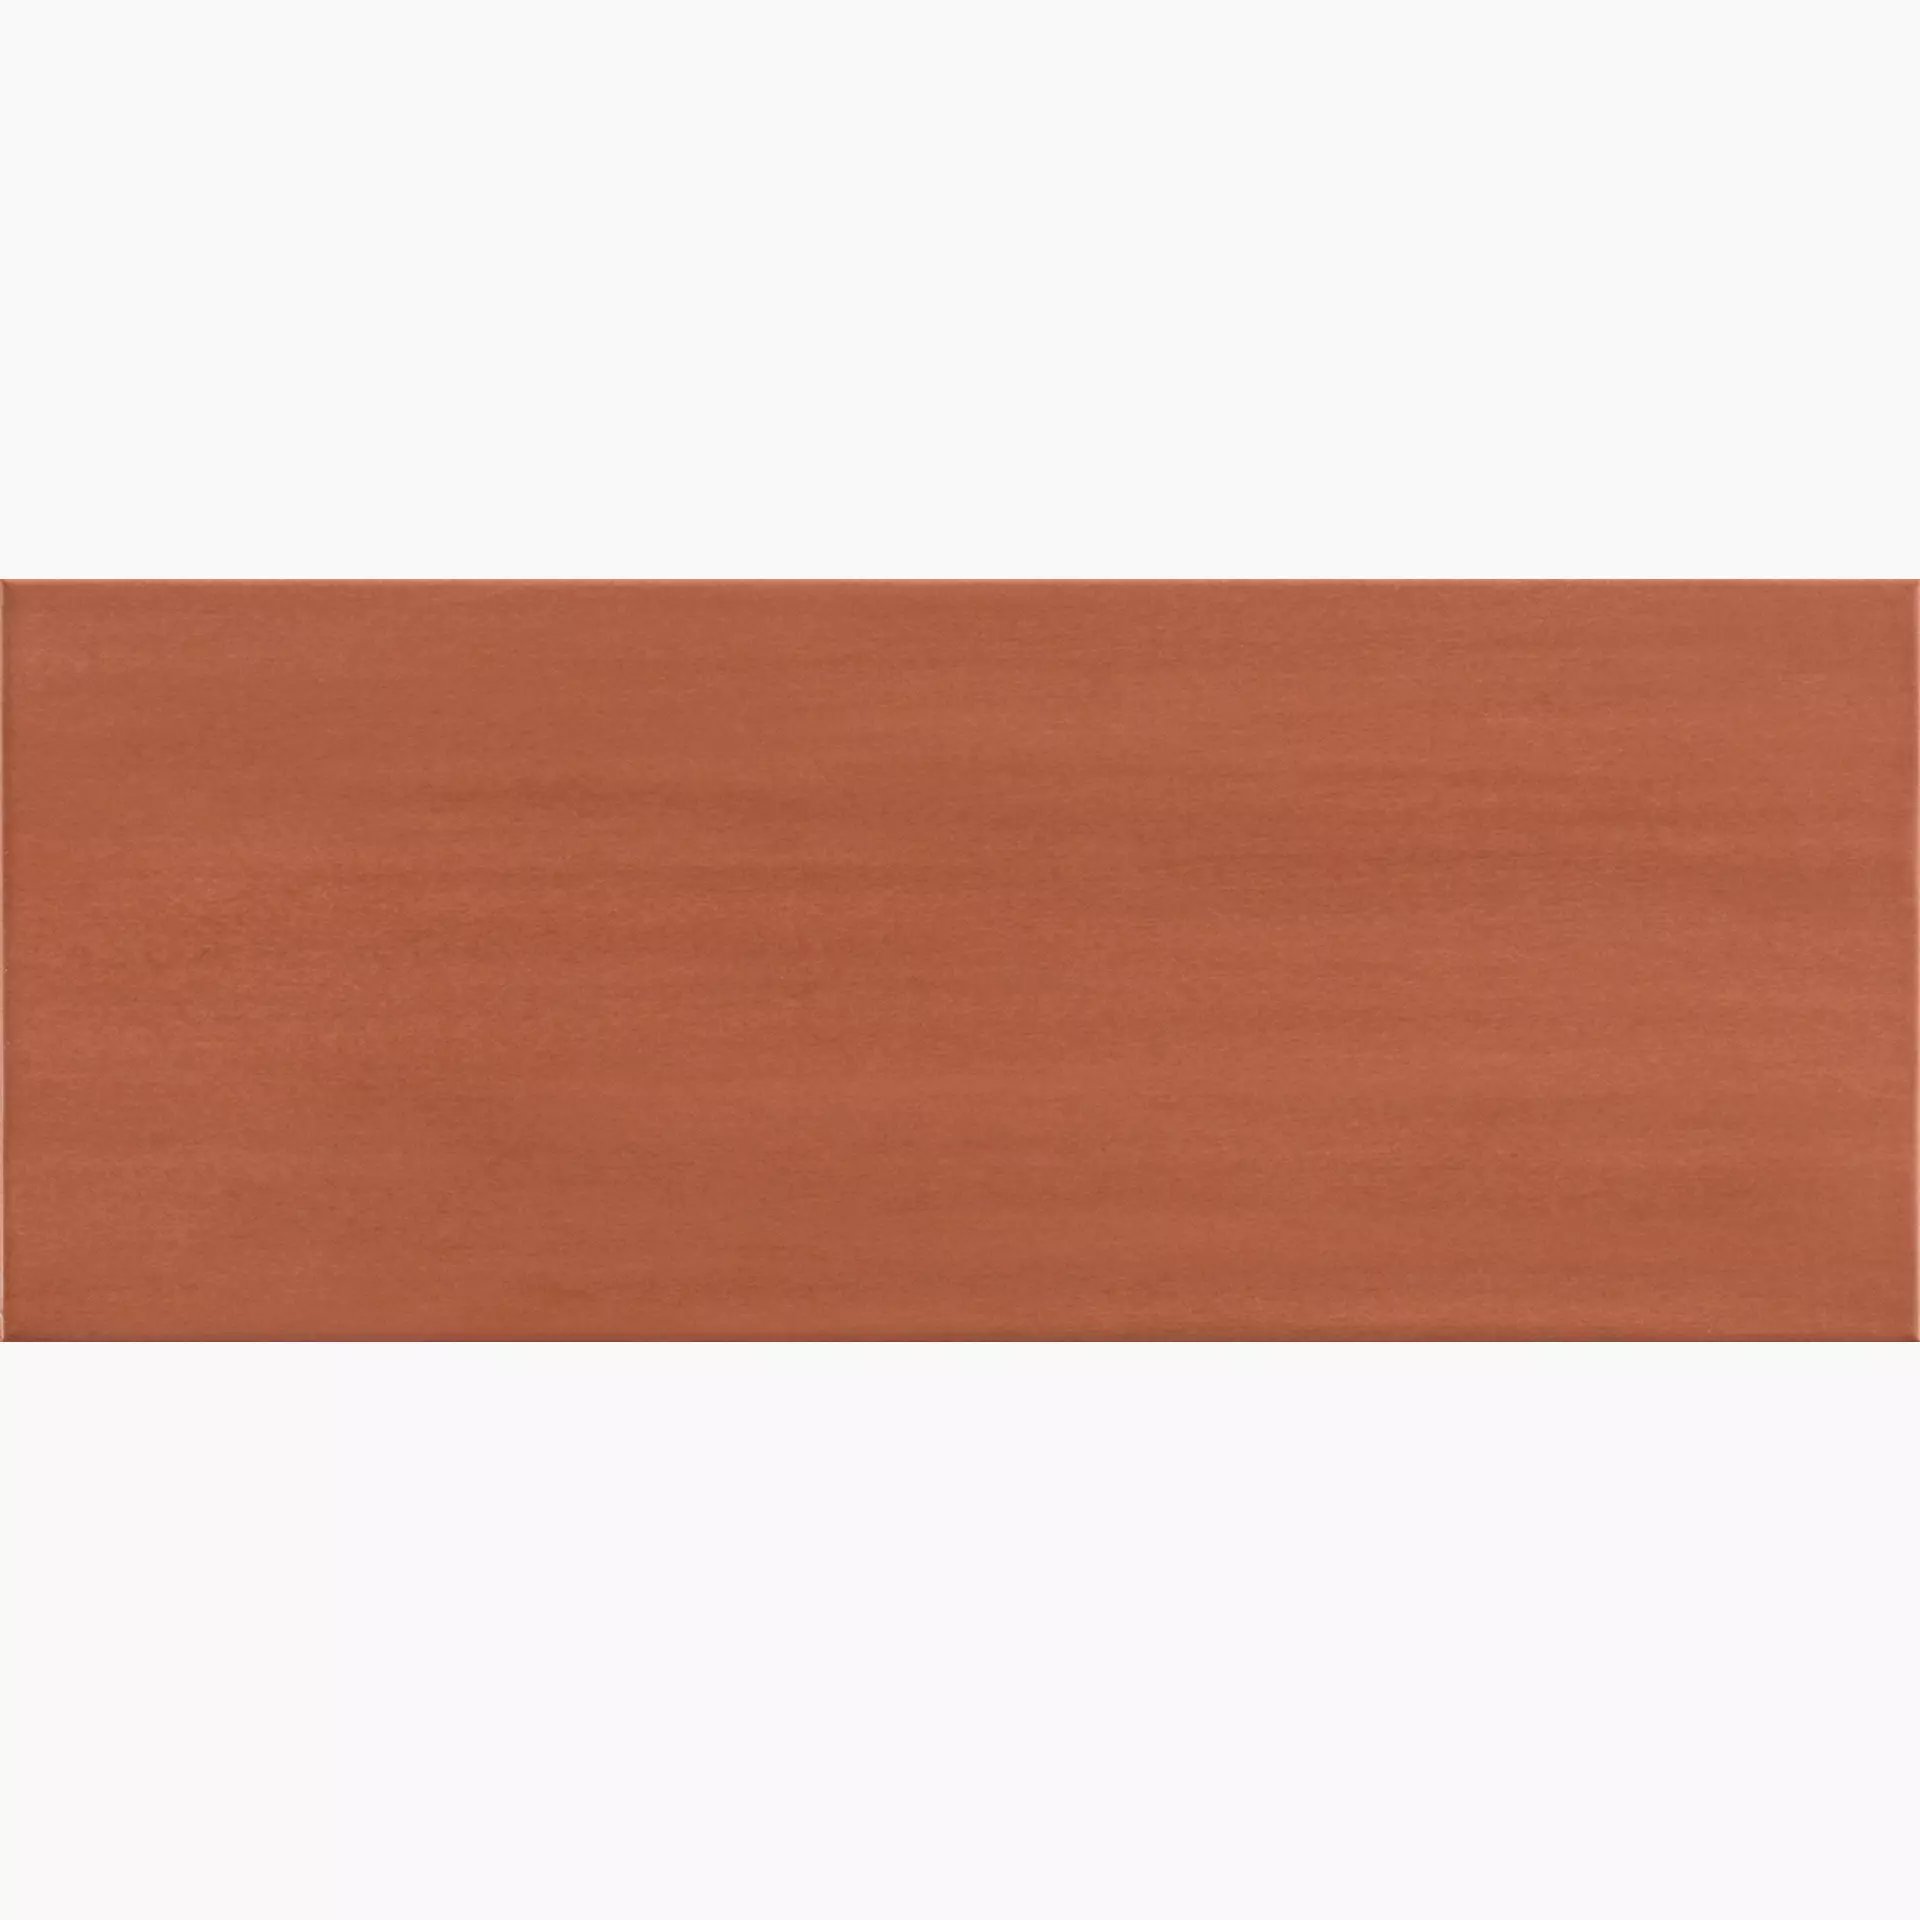 Wandfliese Marazzi Paint Rosso Naturale – Matt Rosso MMTH matt natur 20x50cm 8,5mm